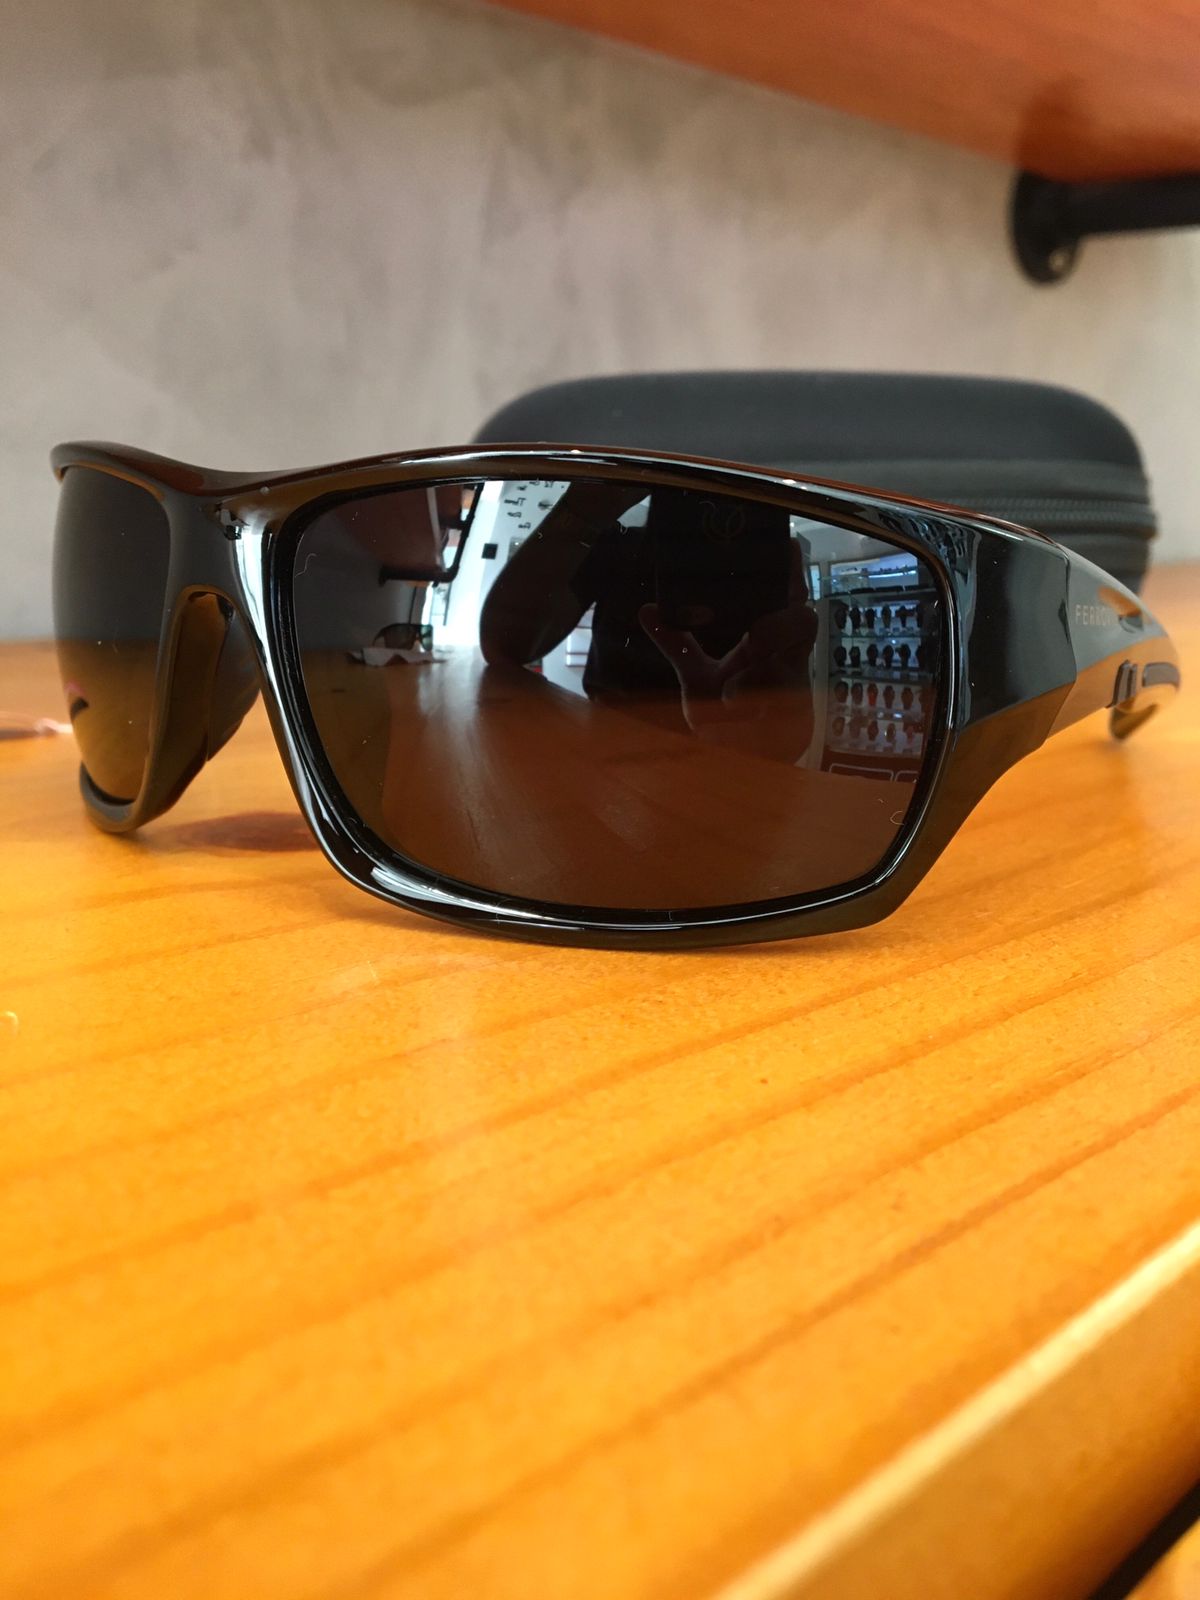 Óculos de Sol Ferrovia Masculino Preto Esmaltado Lupa Esportivo Flexível Acetato Polarizado FR7005 C1